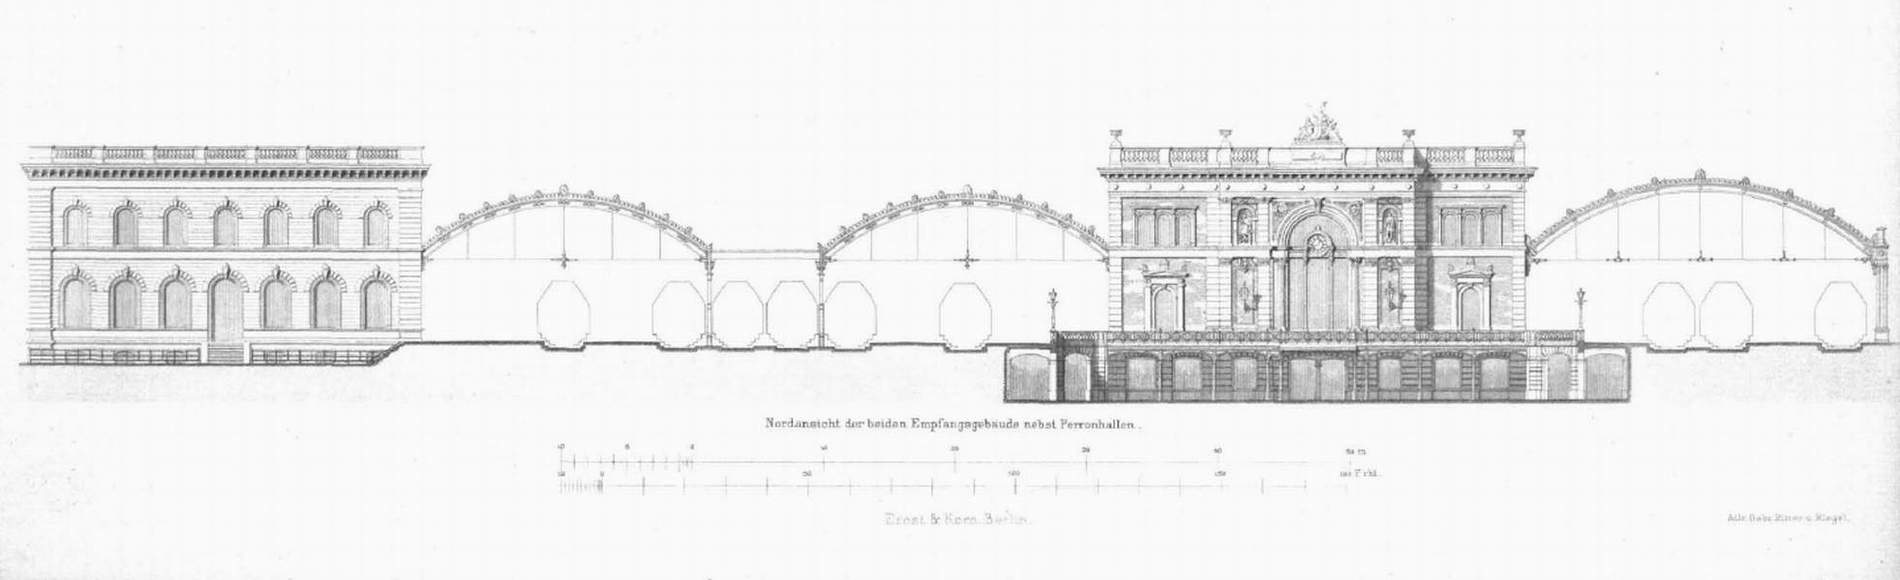 Nordansicht der Empfangsgebäude des Centralbahnhofs 1879 (aus: Centralblatt der Bauverwaltung 1879, Archiv Chronik)